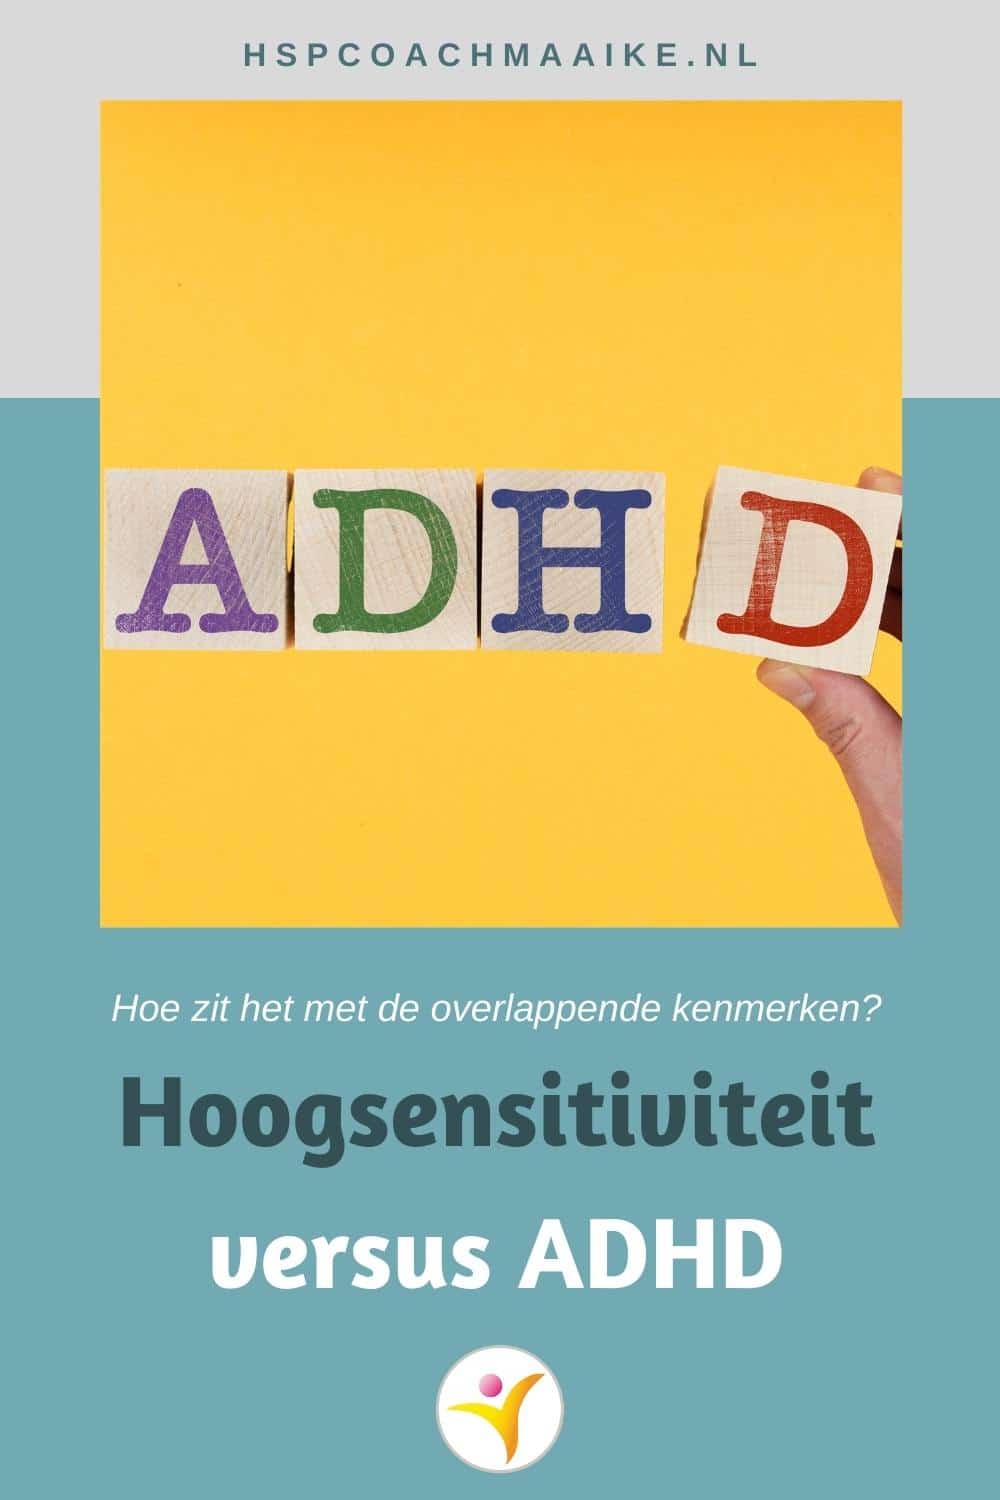 Hoogsensitiviteit versus ADHD versus hoogbegaafdheid